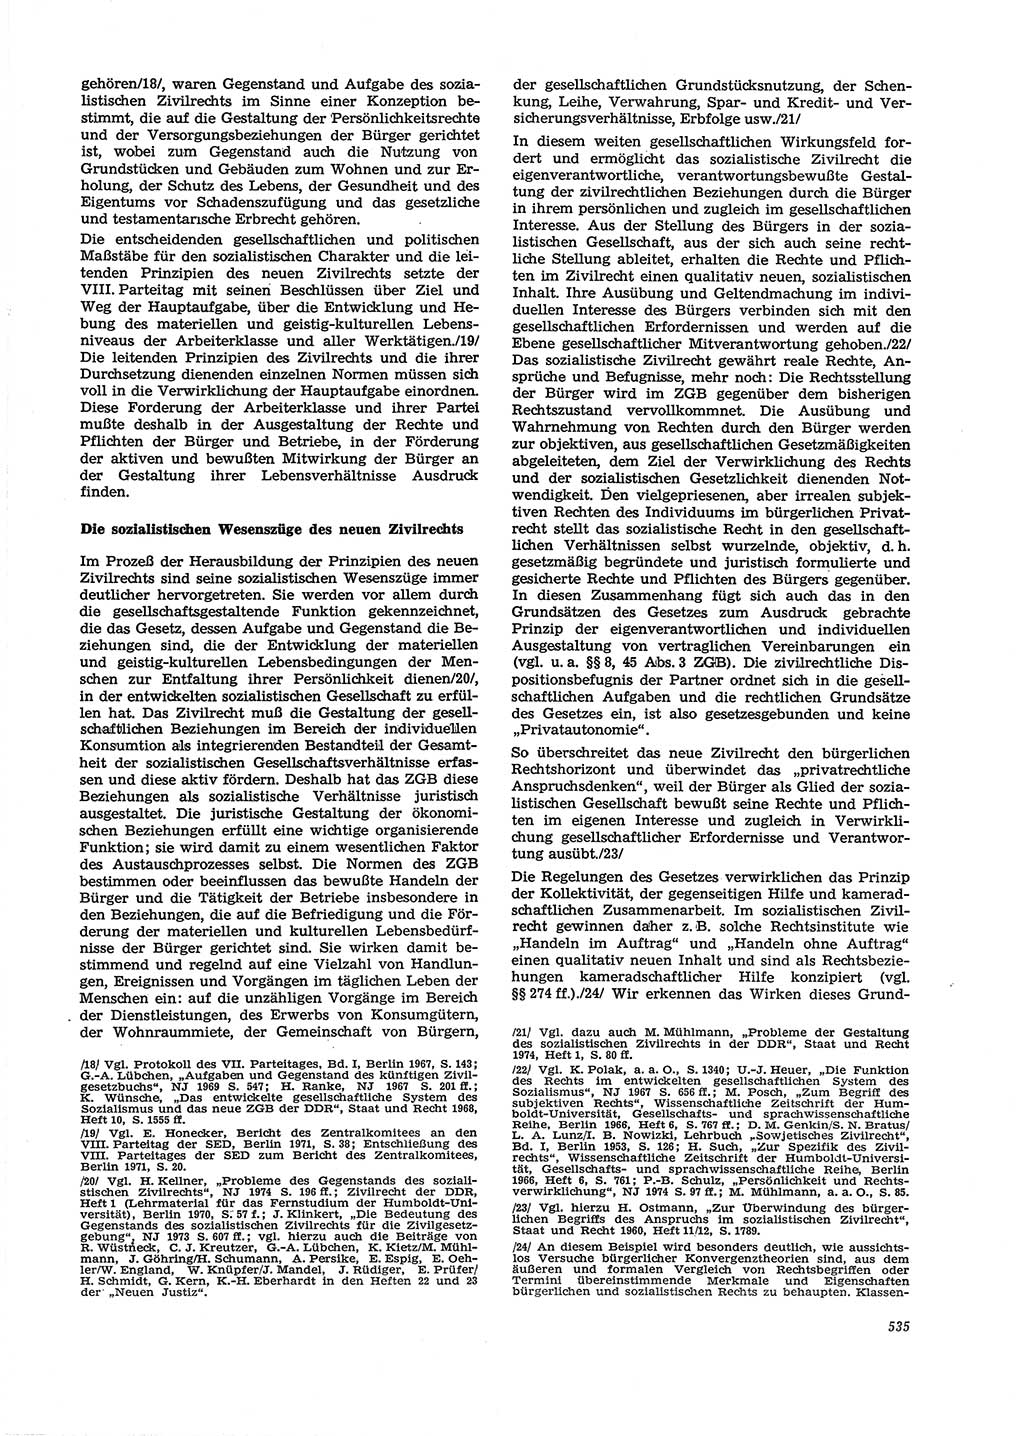 Neue Justiz (NJ), Zeitschrift für Recht und Rechtswissenschaft [Deutsche Demokratische Republik (DDR)], 29. Jahrgang 1975, Seite 535 (NJ DDR 1975, S. 535)